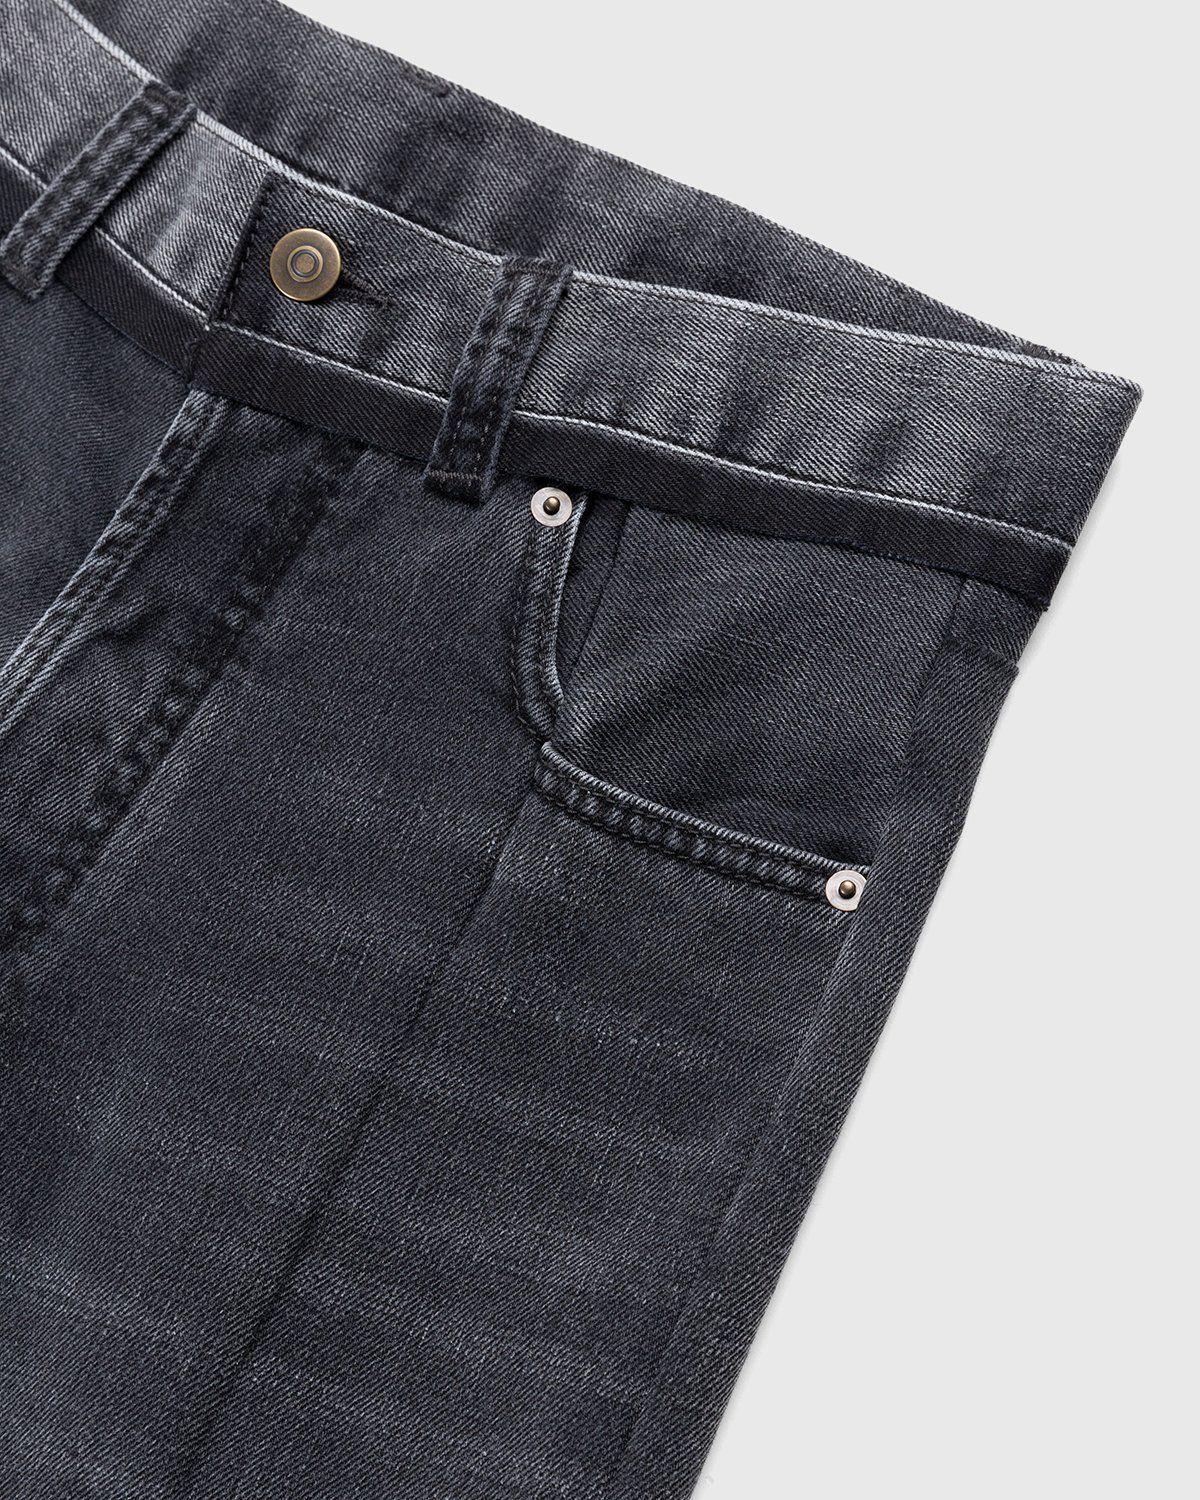 Maison Margiela – Spliced Jeans Black - Pants - Black - Image 3